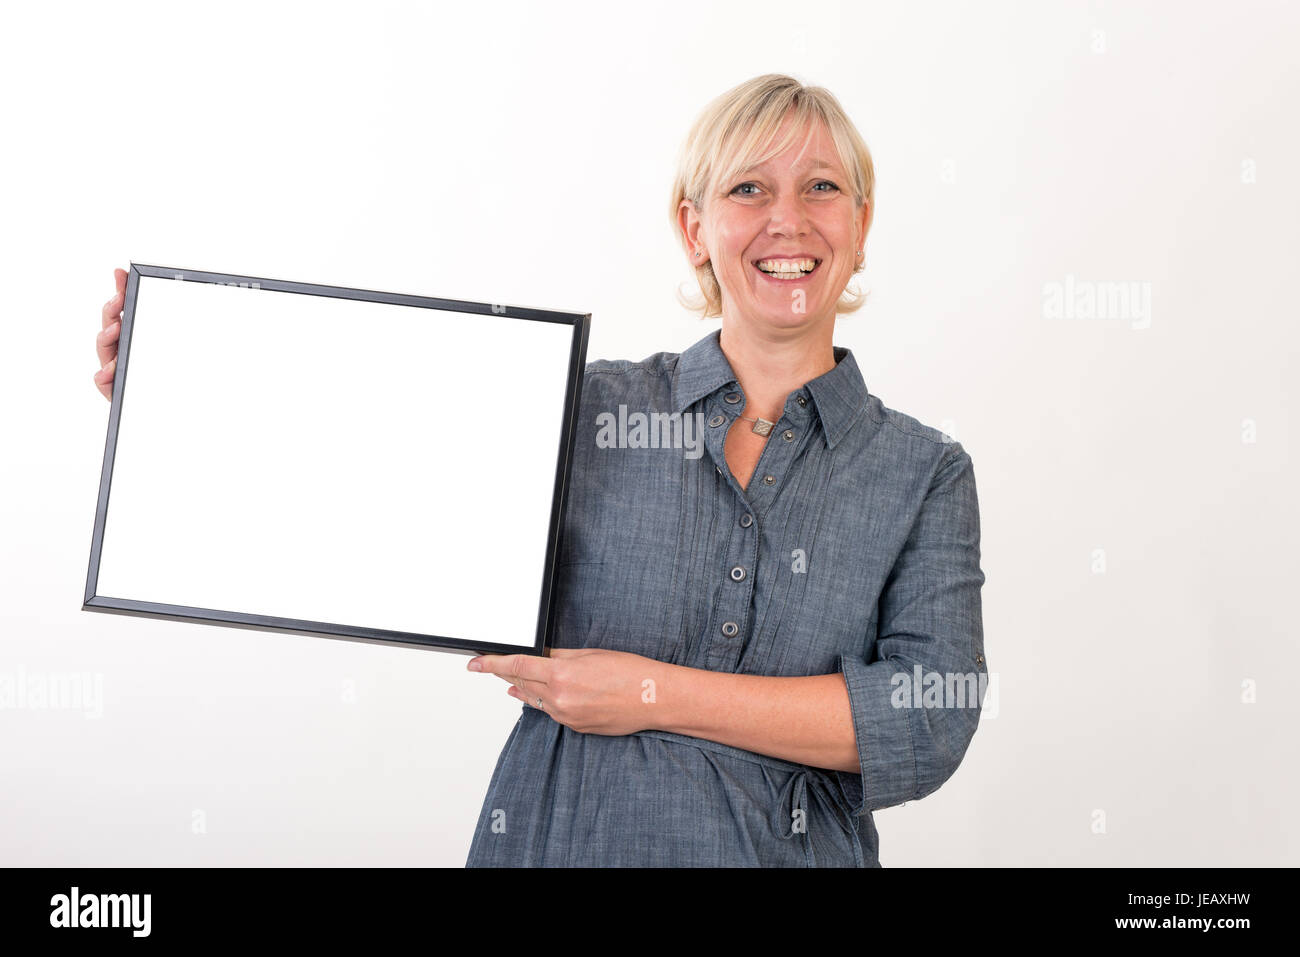 Belle femme d'âge intermédiaire européen dans les affaires dress holding a blank white board - studio shot devant un fond blanc Banque D'Images